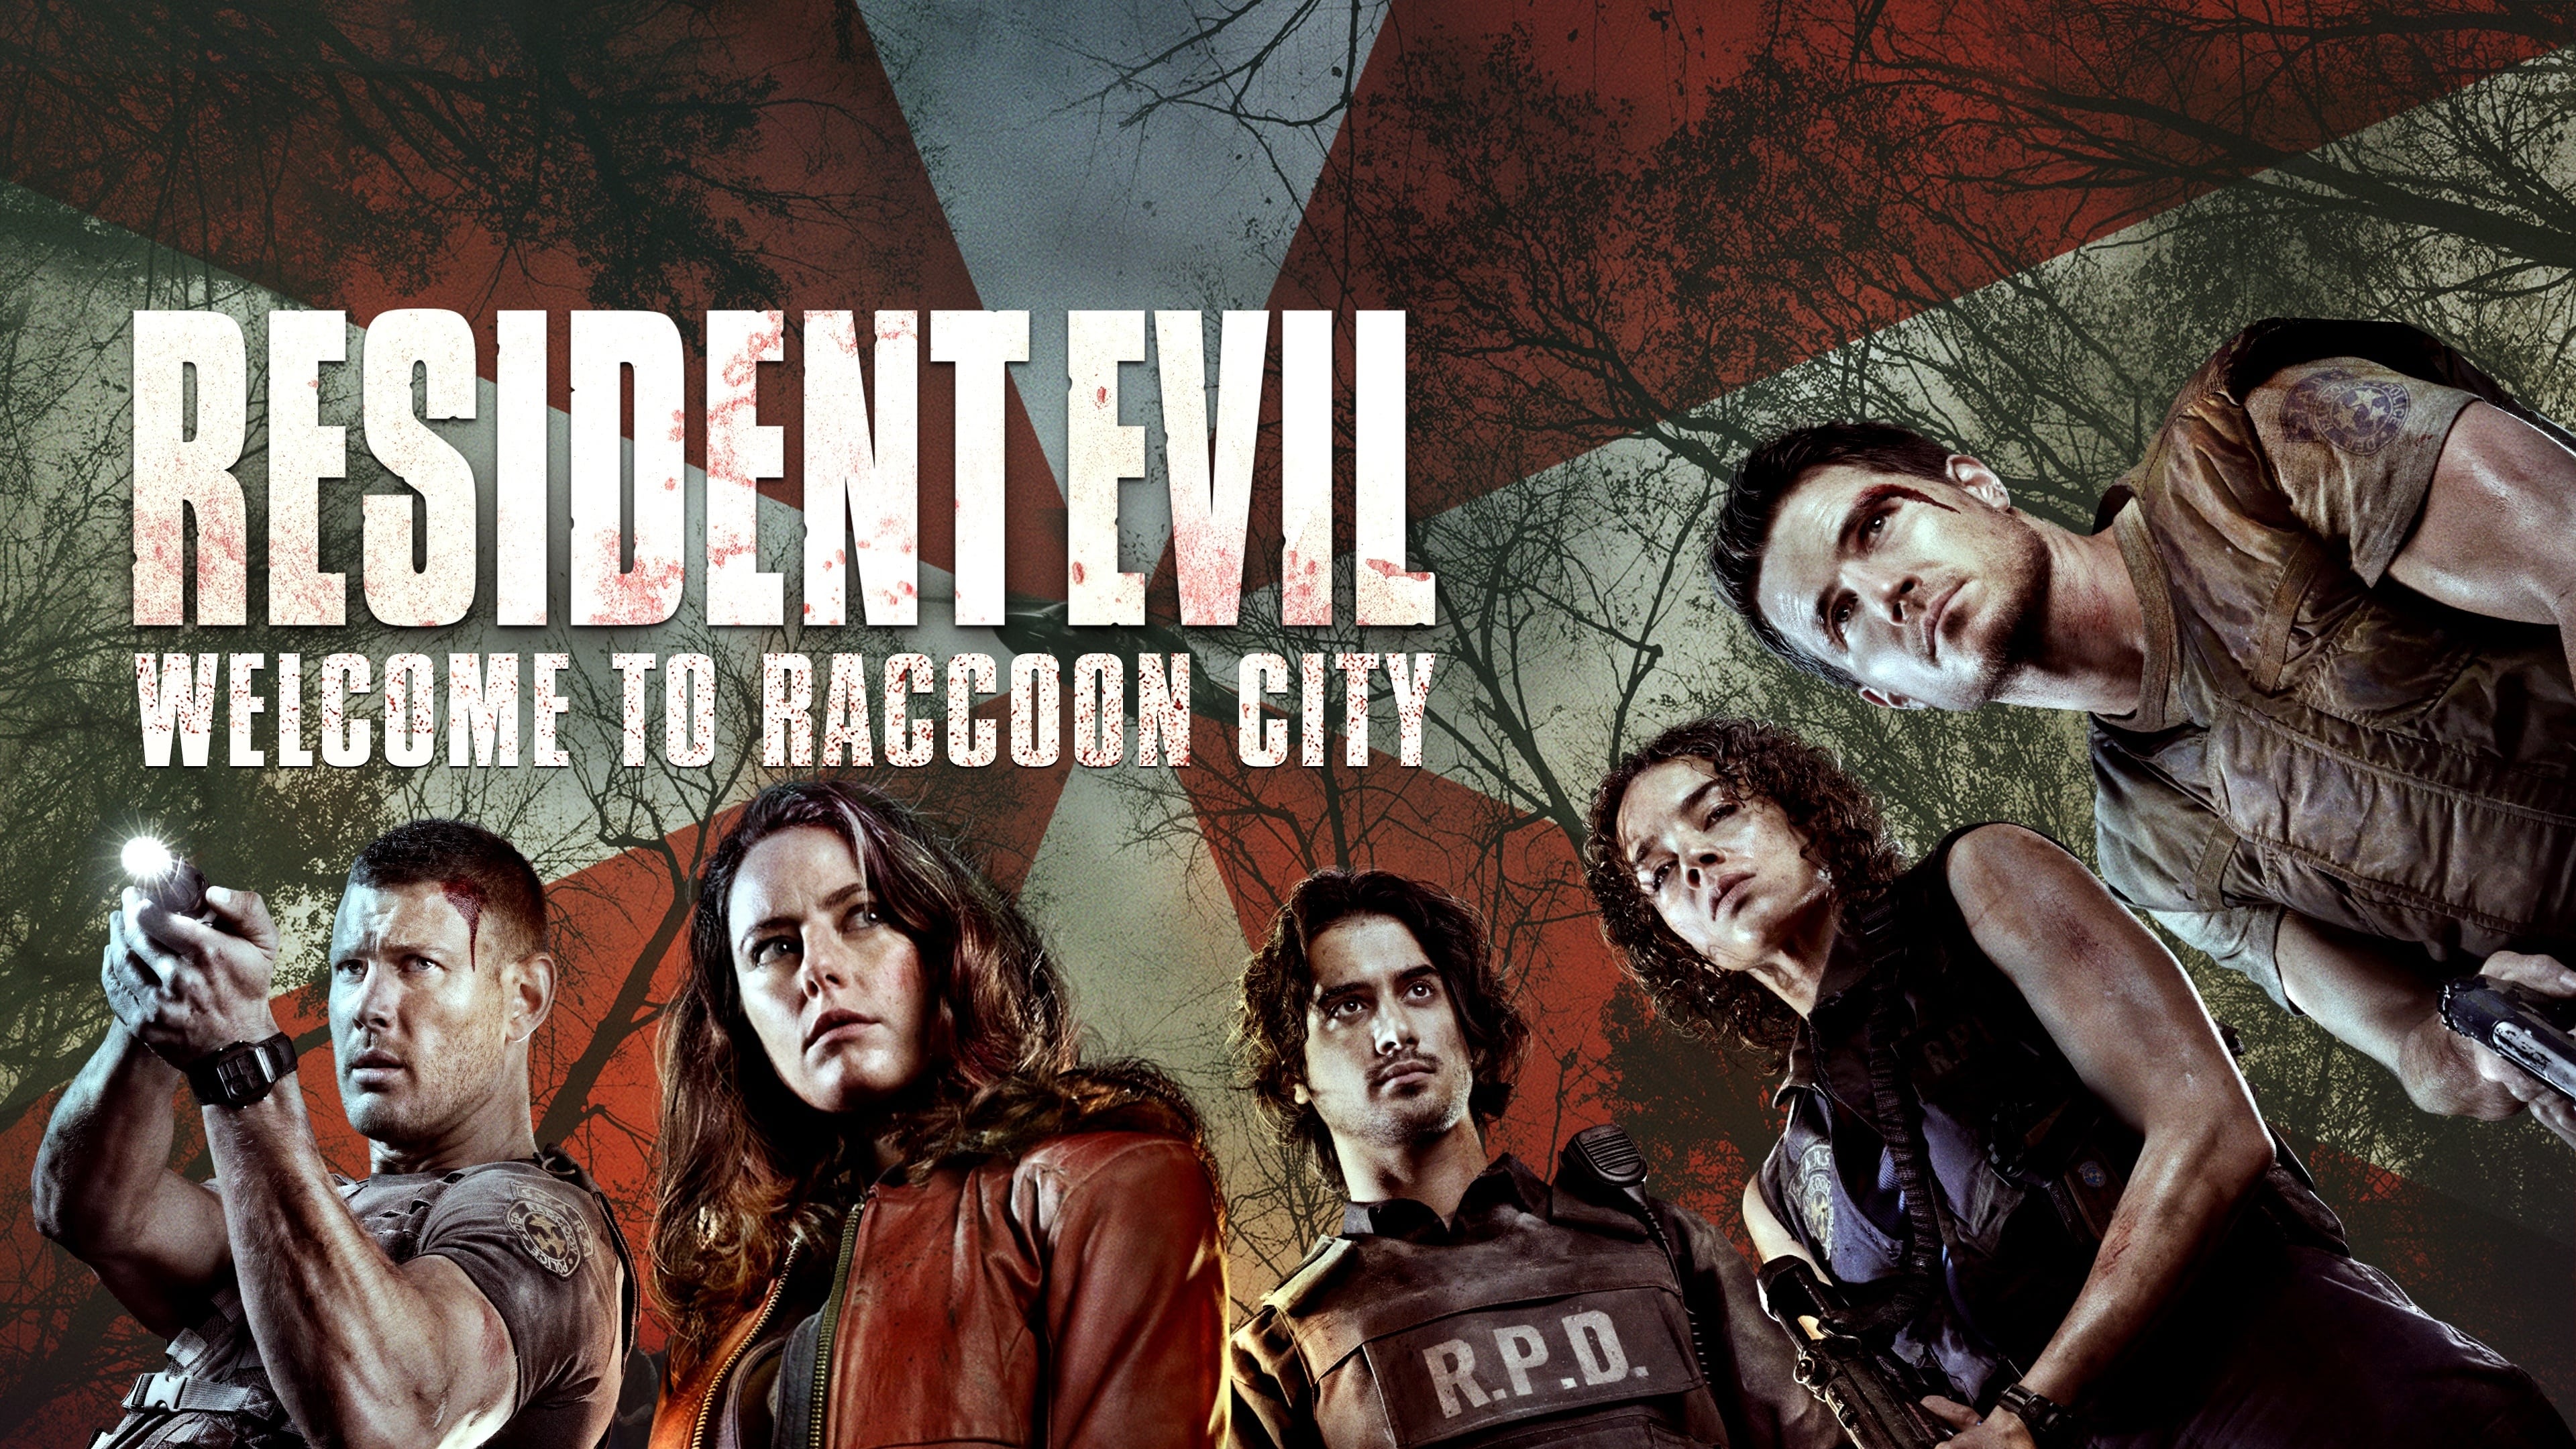 Resident Evil: Witajcie w Raccoon City (2021)